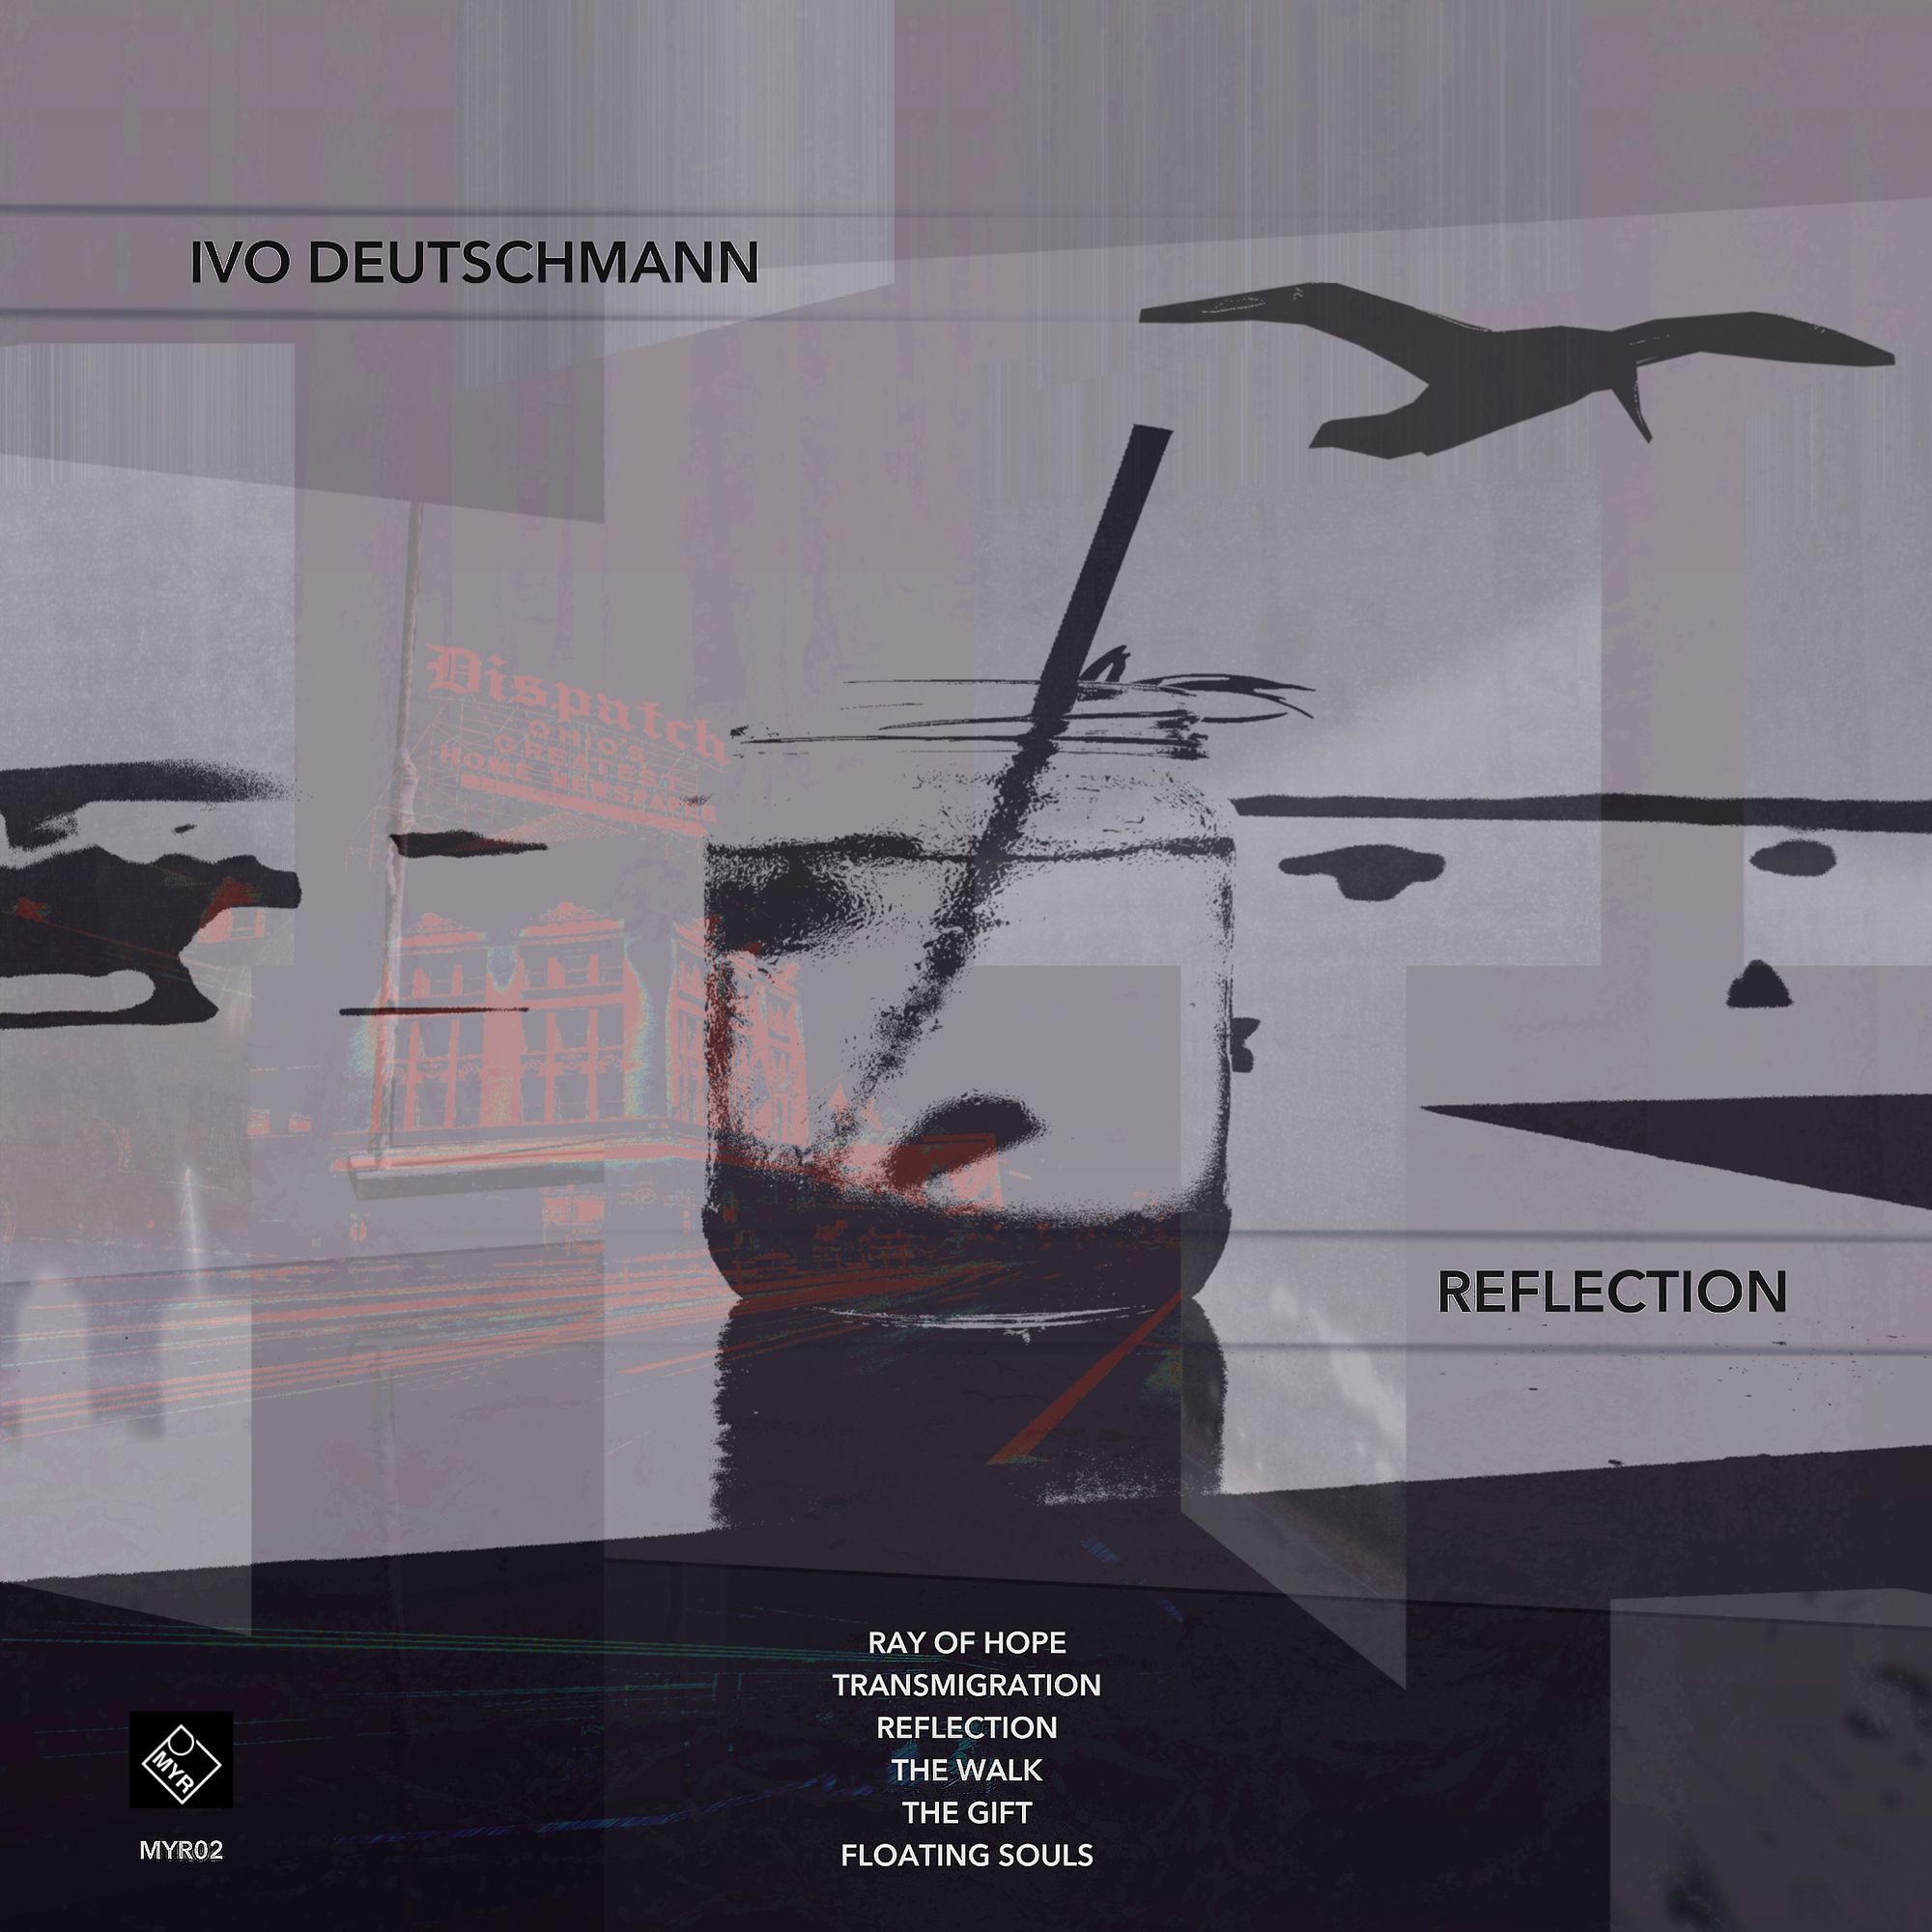 ivo_deutschmann_-_reflection_ep_-_cover_2000_.jpg